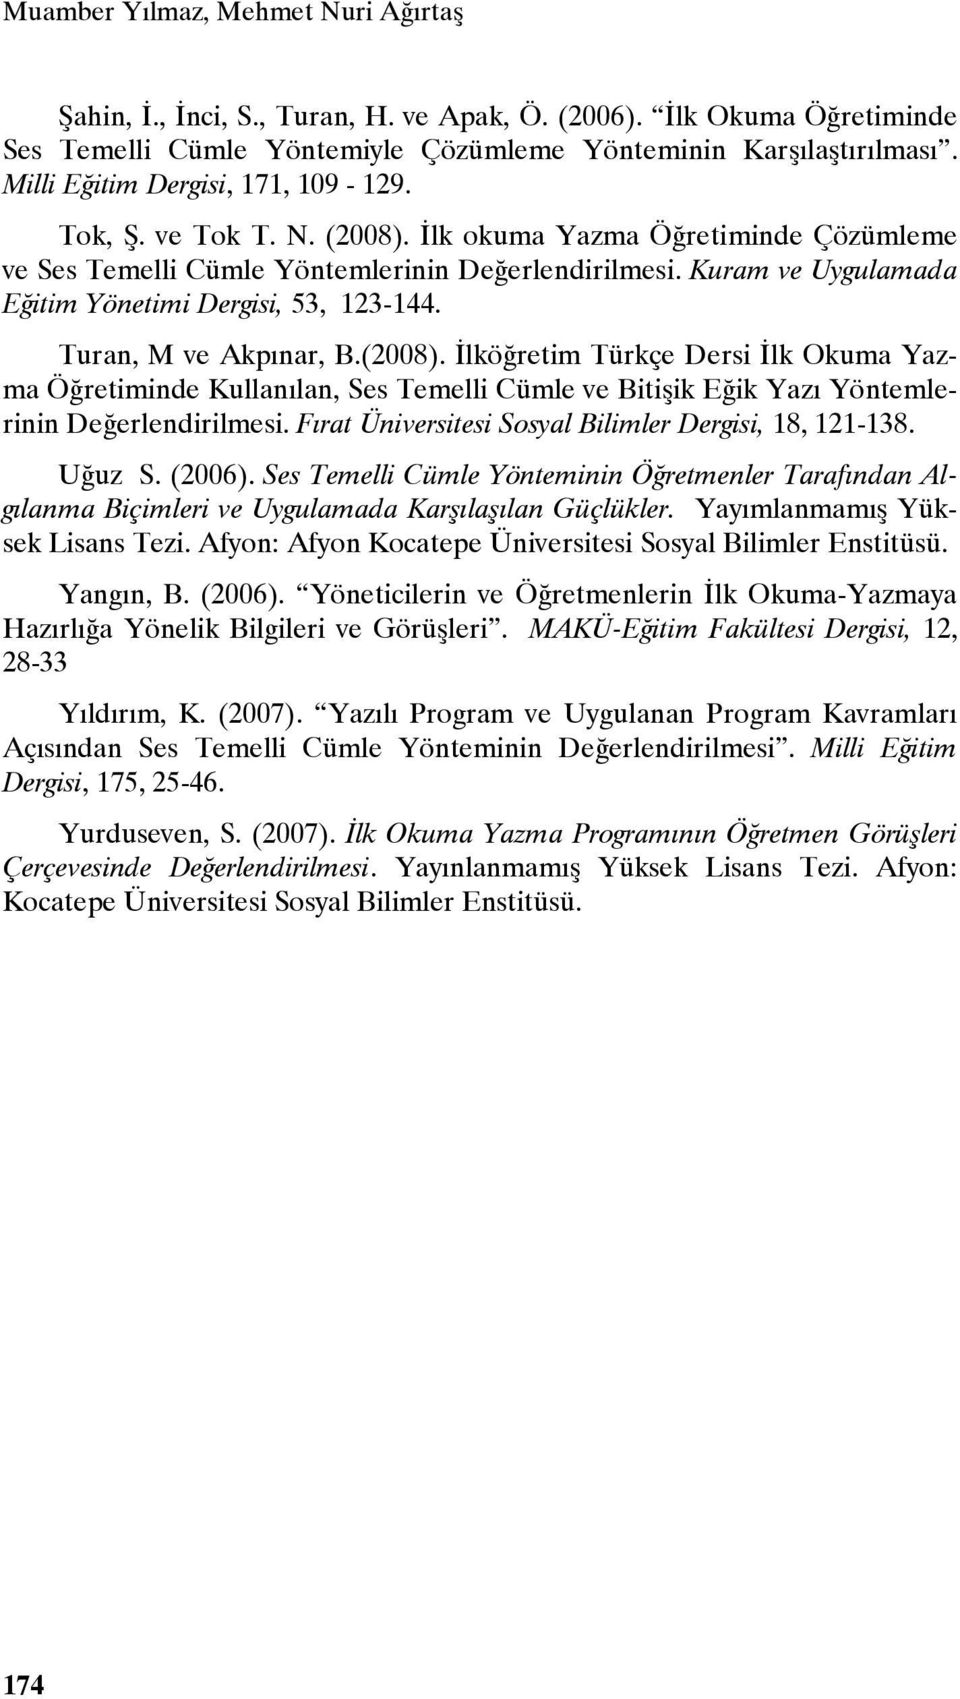 Kuram ve Uygulamada Eğitim Yönetimi Dergisi, 53, 123-144. Turan, M ve Akpınar, B.(2008).